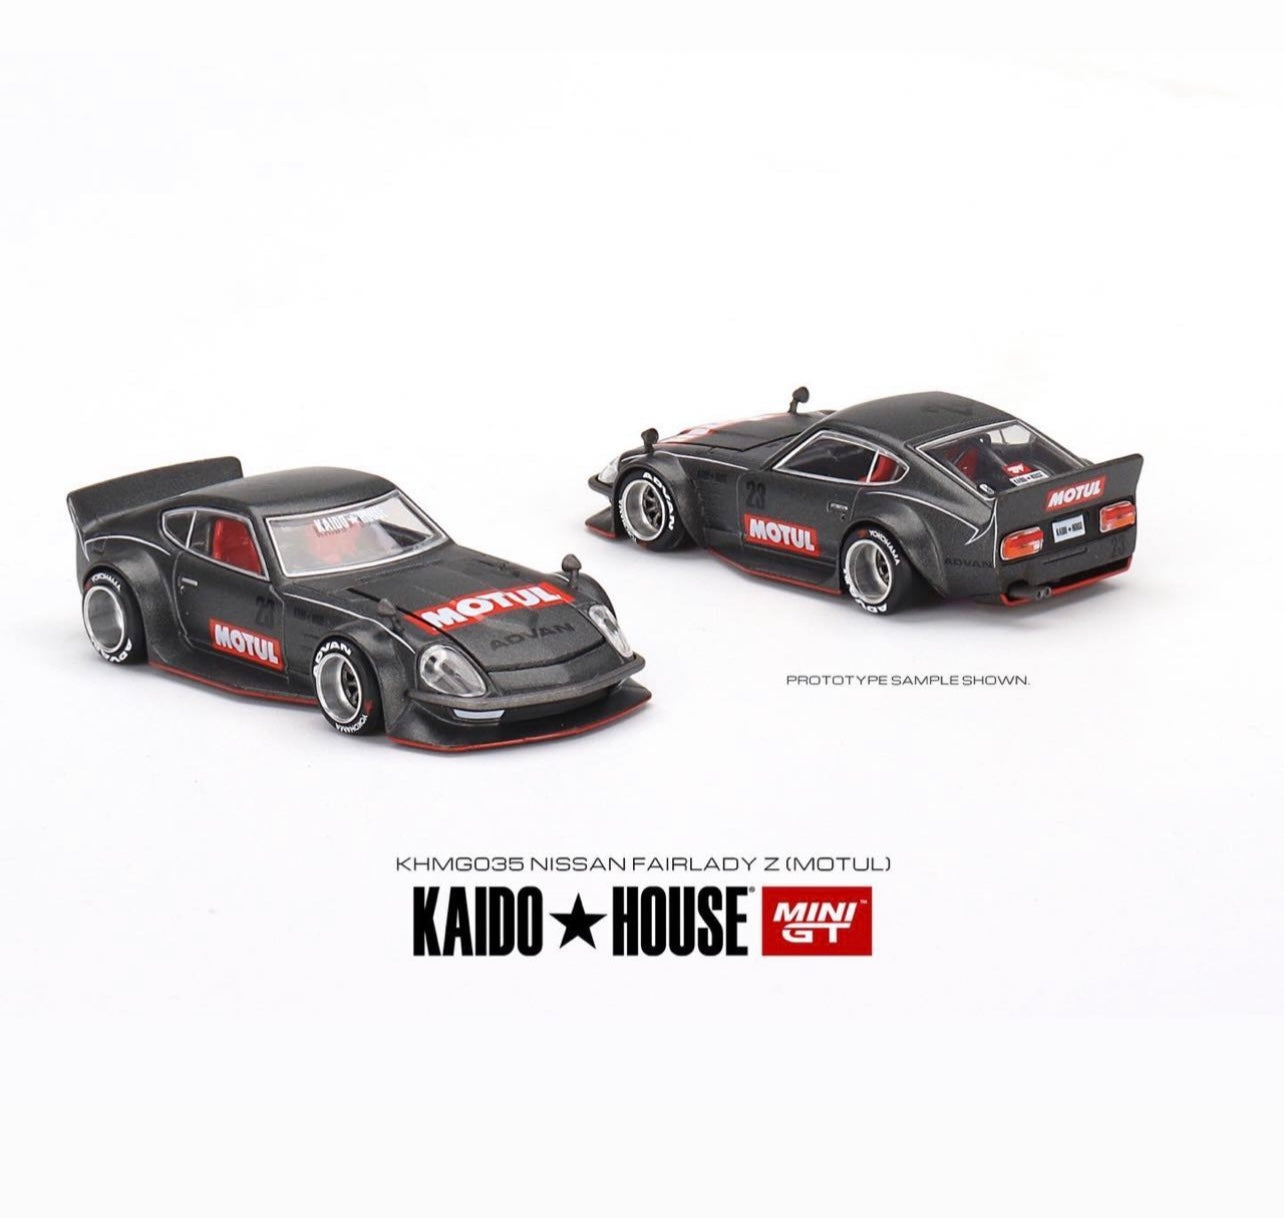 Mini GT x Kaido House Datsun Fairlady Z #035